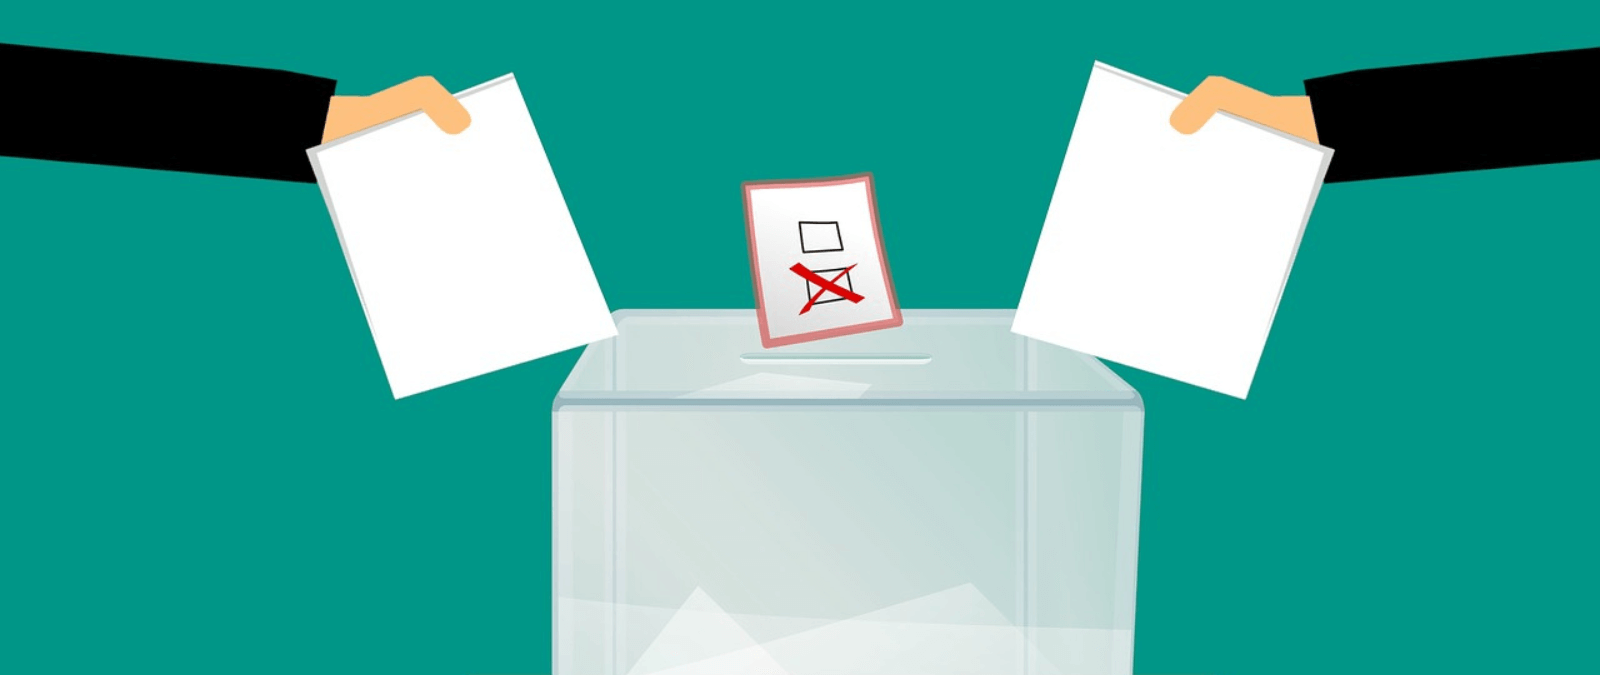 Diferencias entre voto blanco, voto nulo y abstención: cómo afectan al recuento en las elecciones